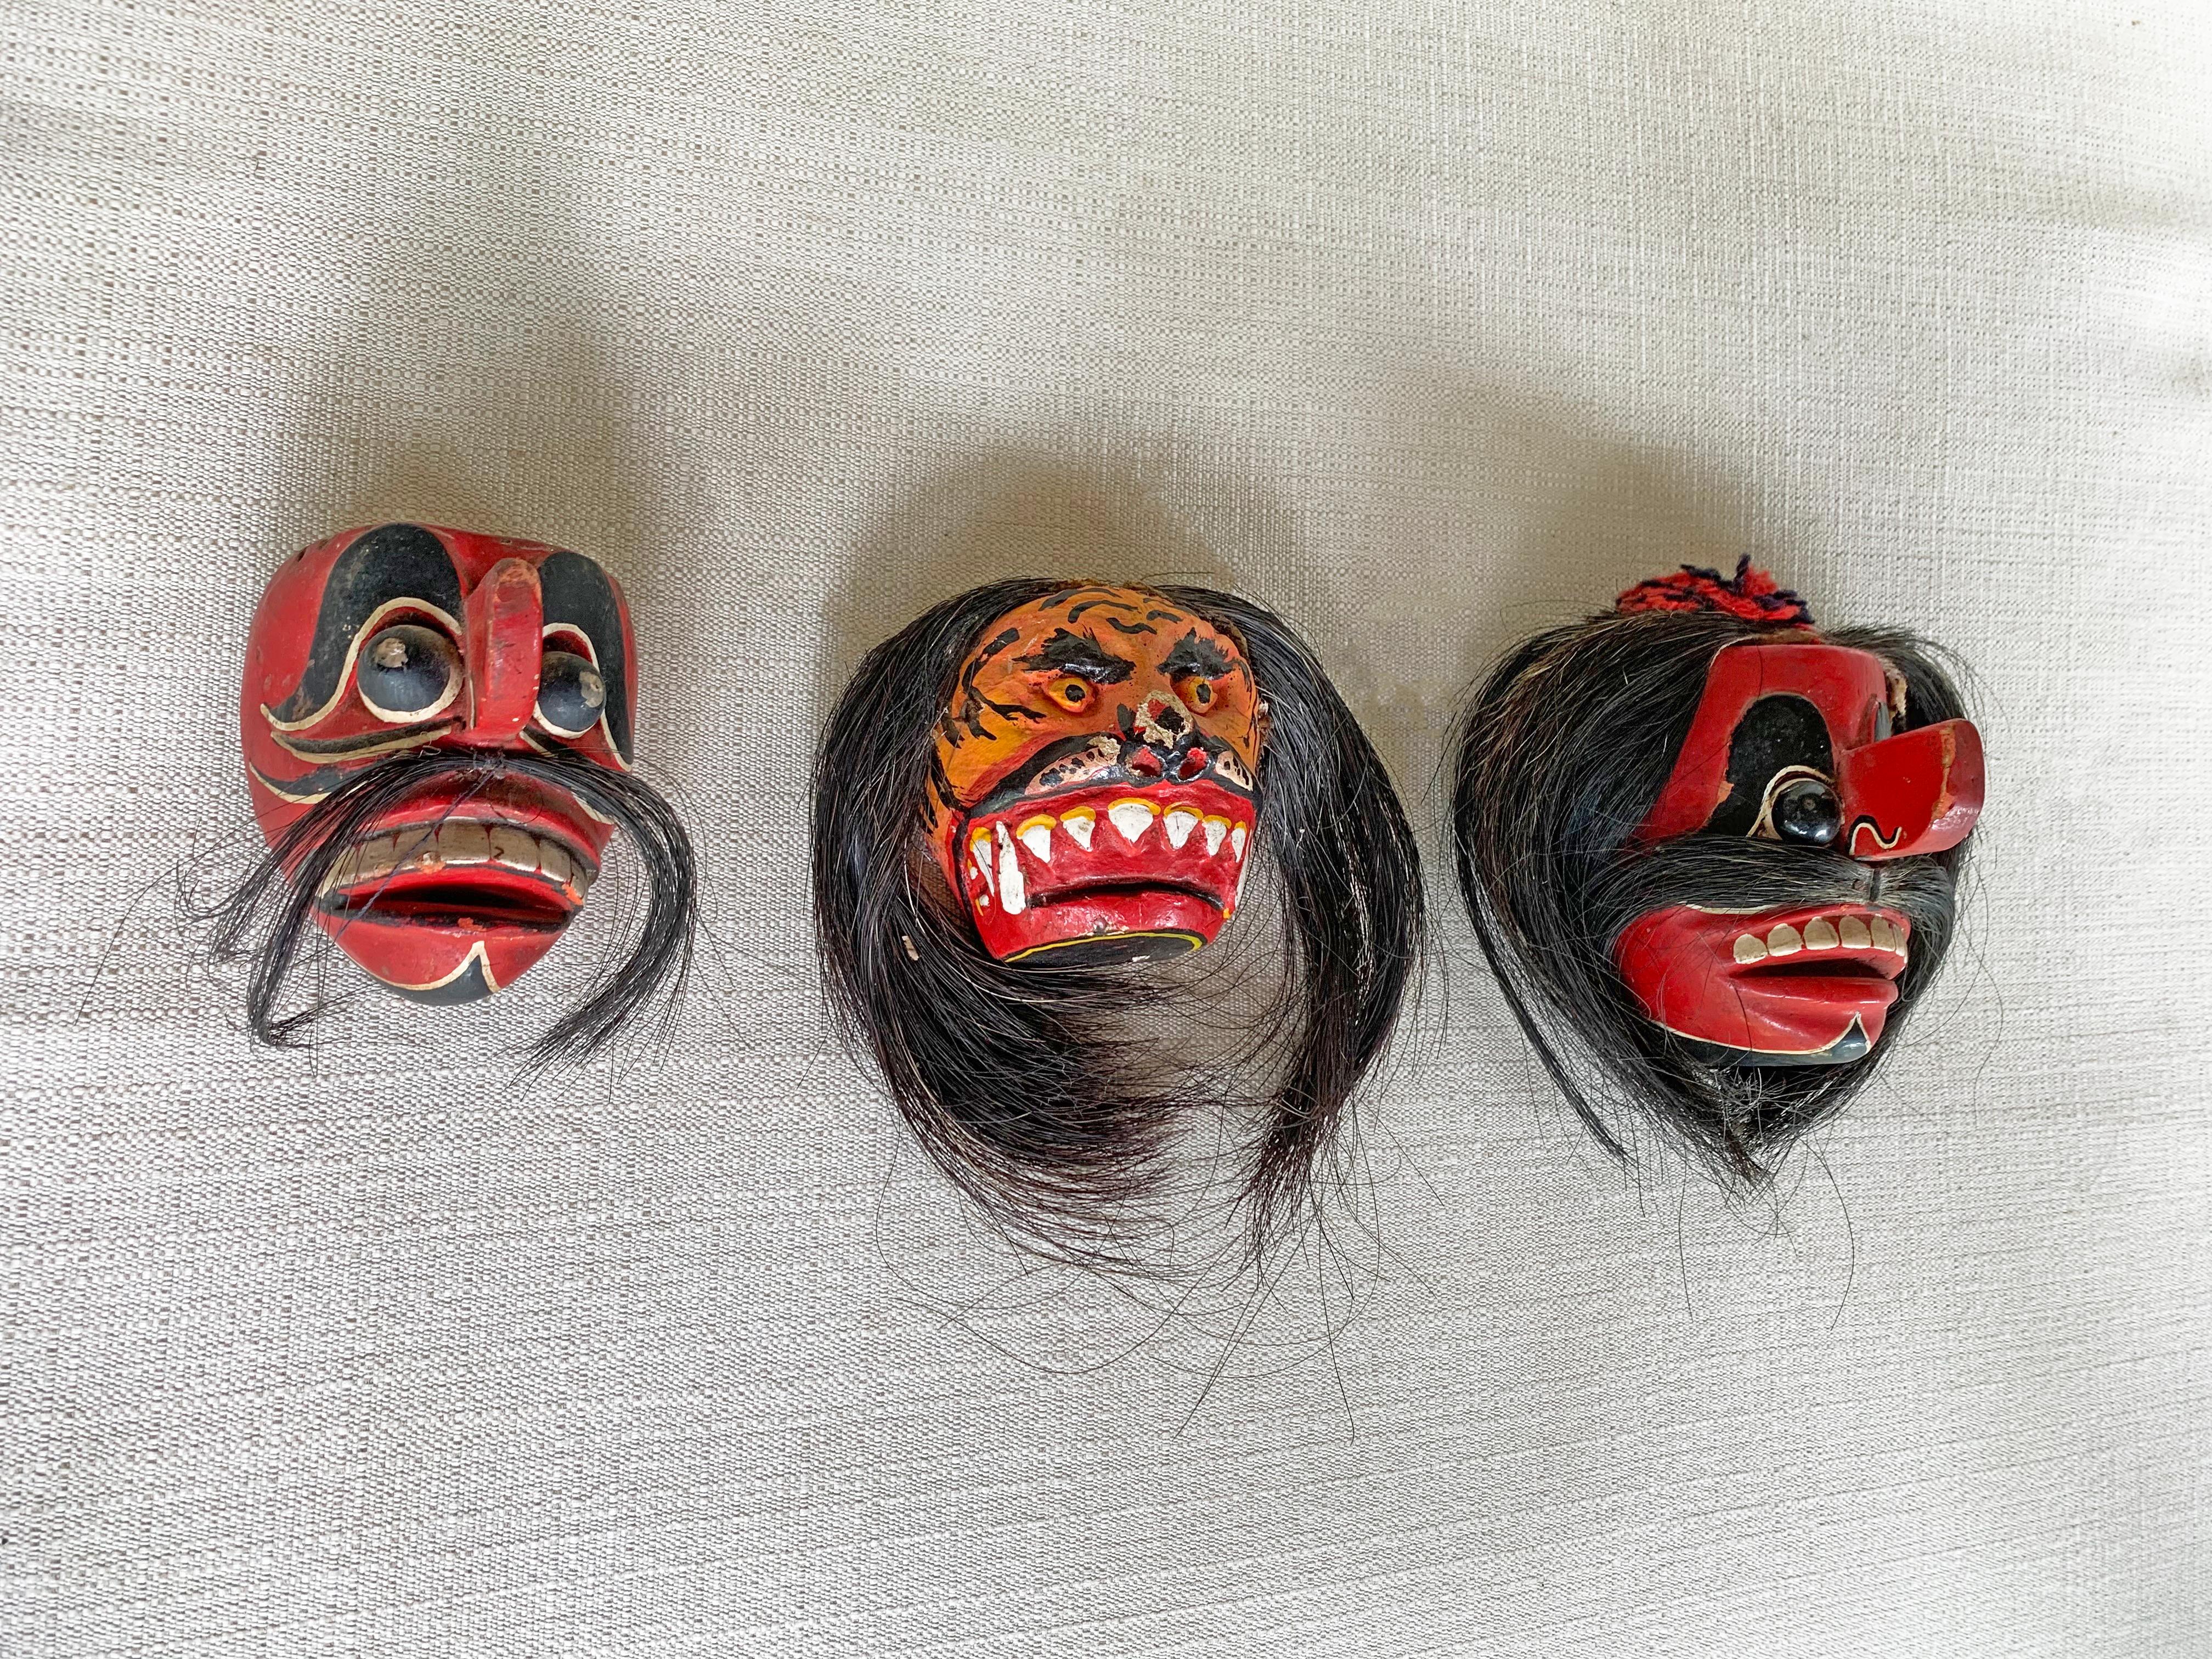 Dieser Satz von 3 Masken aus der Mitte des 20. Jahrhunderts wurde auf der Insel Madura für zeremonielle Zwecke hergestellt. Die Insel Madura liegt vor der nordöstlichen Küste von Java. Diese Maske besteht aus einer Mischung aus roter, weißer und